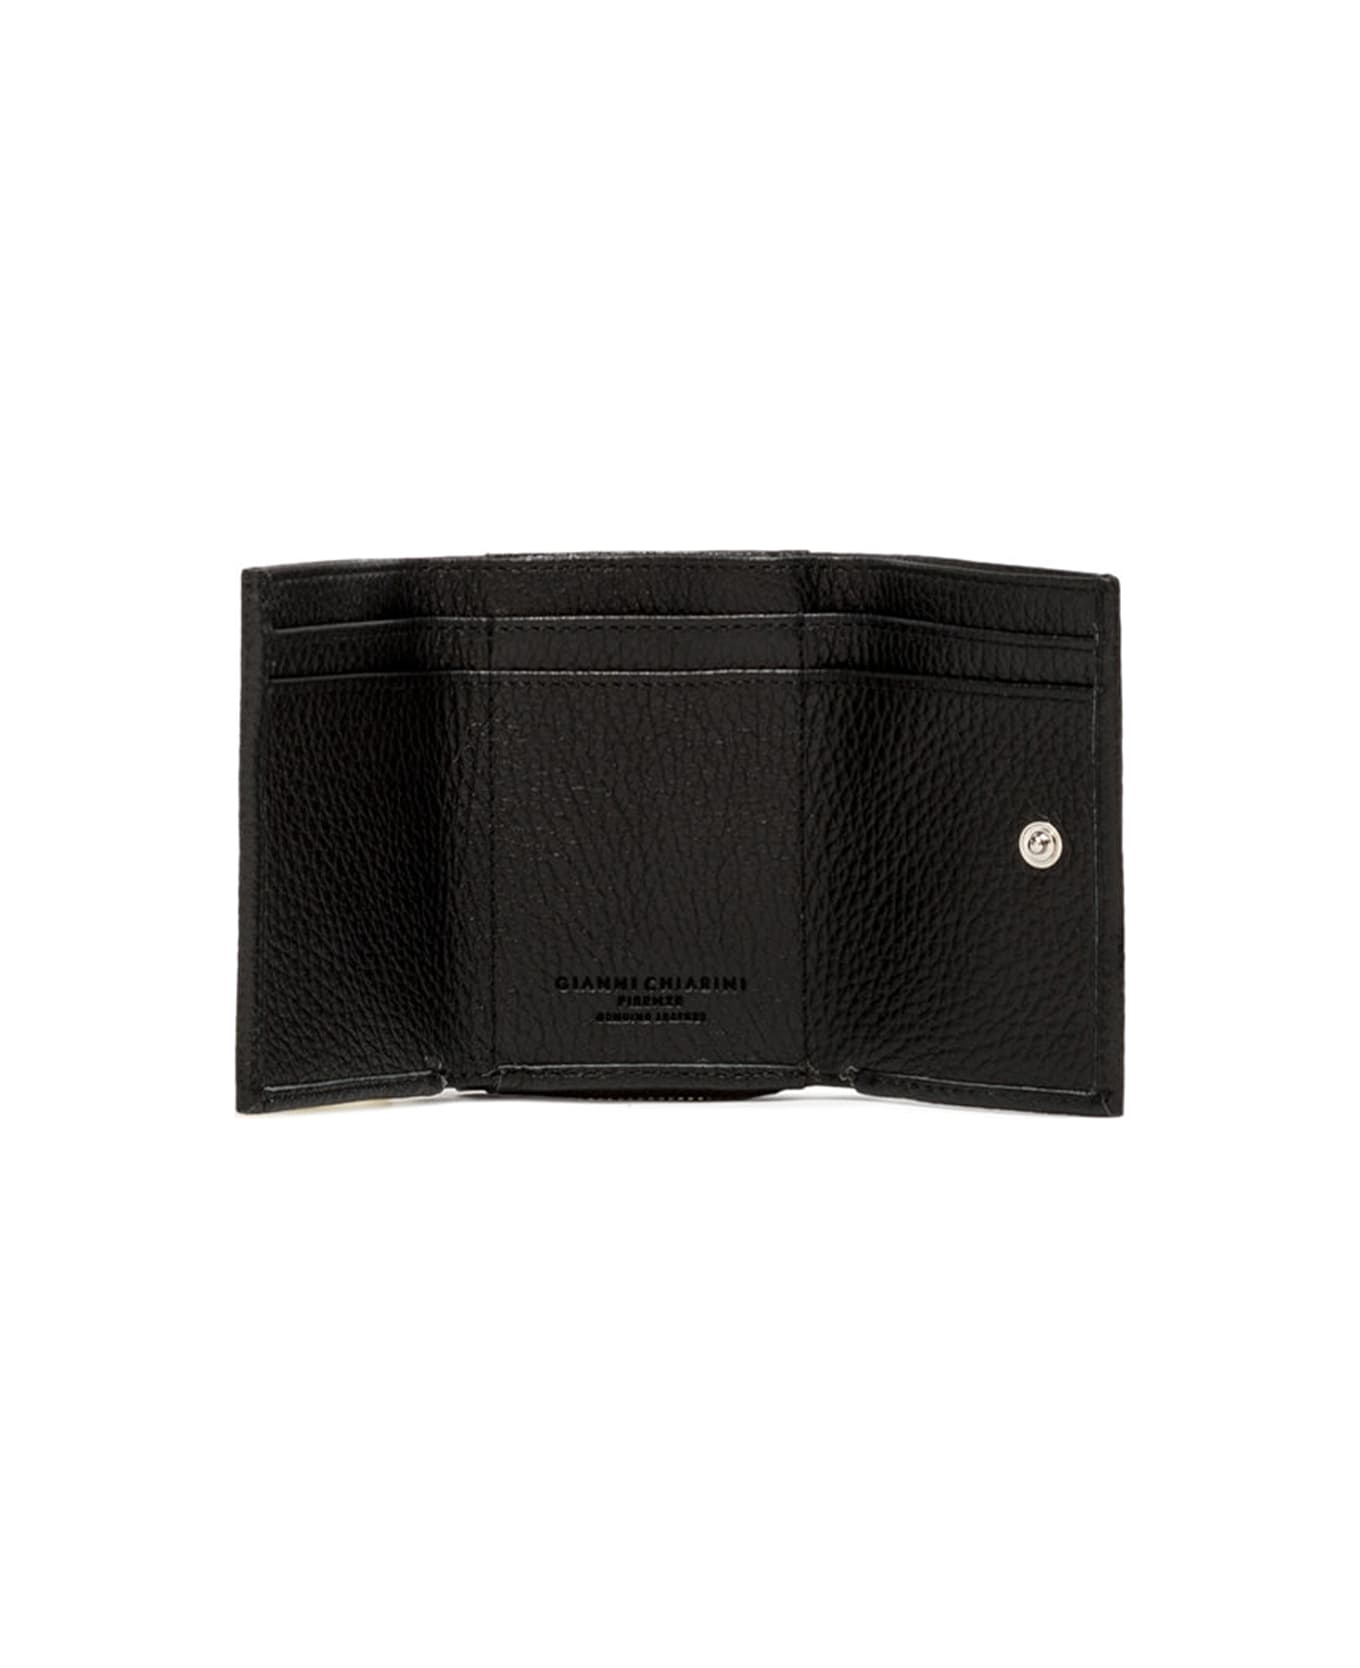 Gianni Chiarini Black Leather Trifold Wallet - NERO 財布